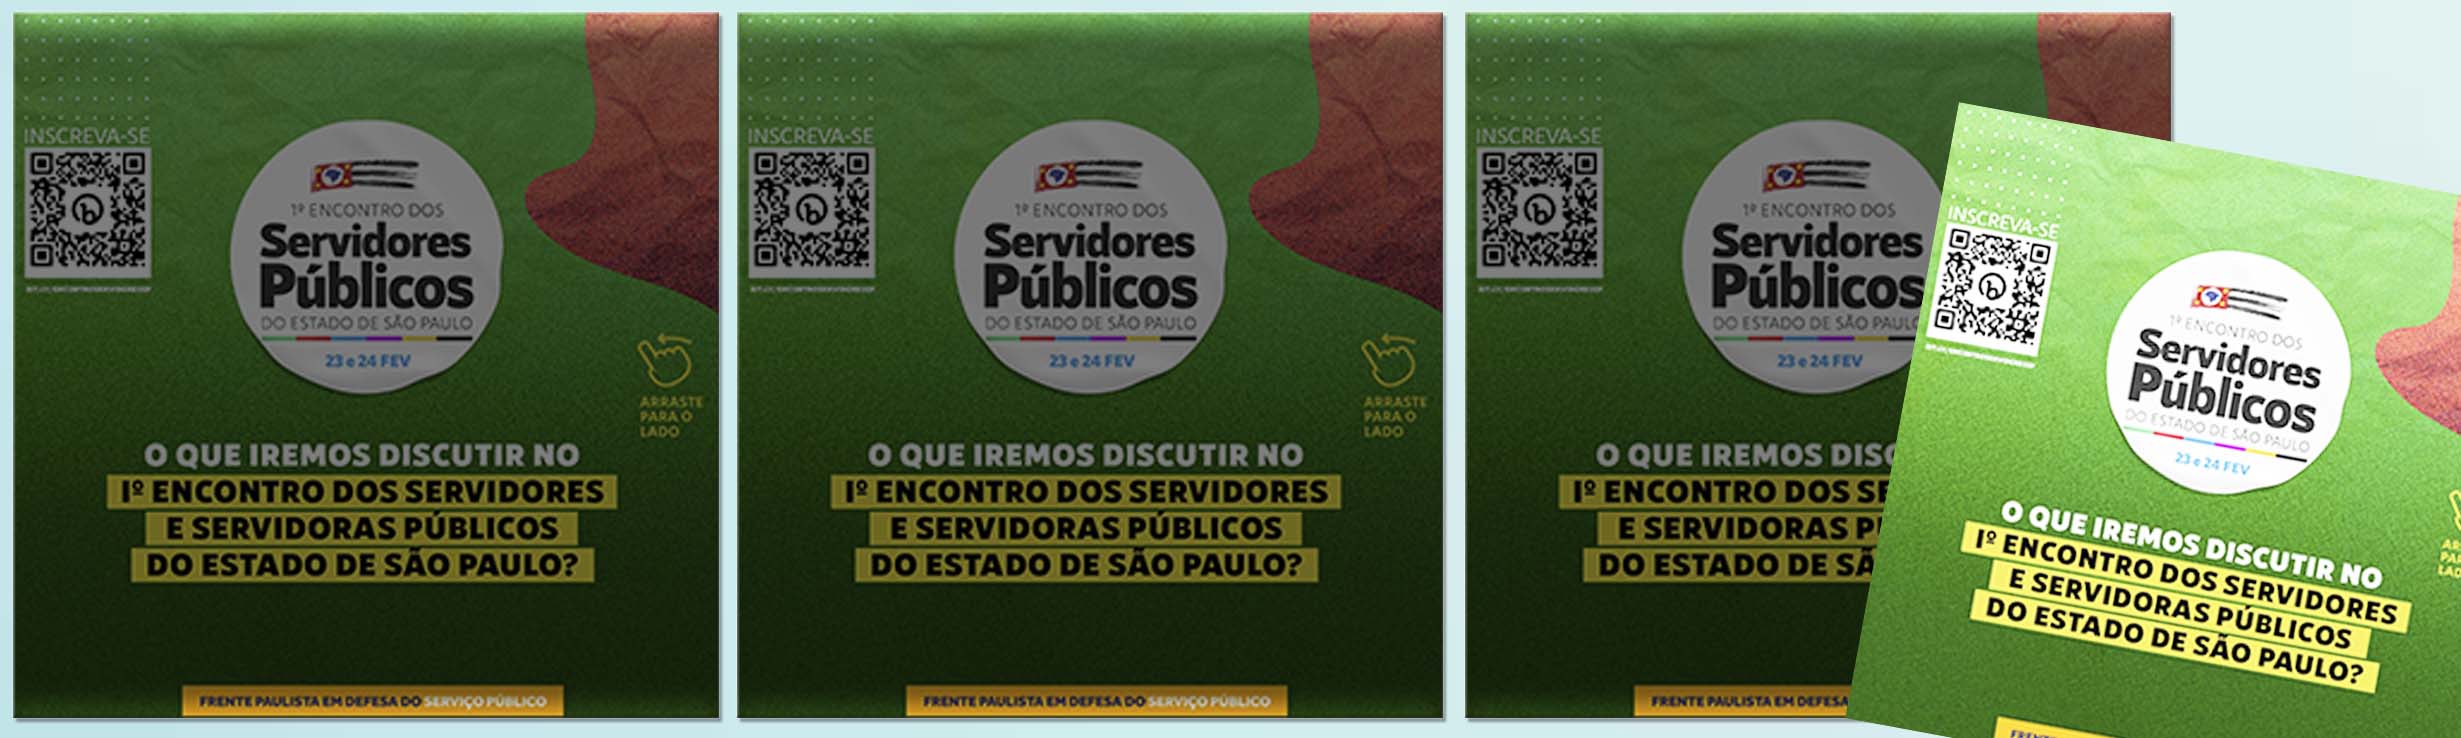 1º Encontro de Servidores paulistas, em 23 e 24/2, vai debater ameaças de reforma administrativa e avanço nas privatizações. Participe 